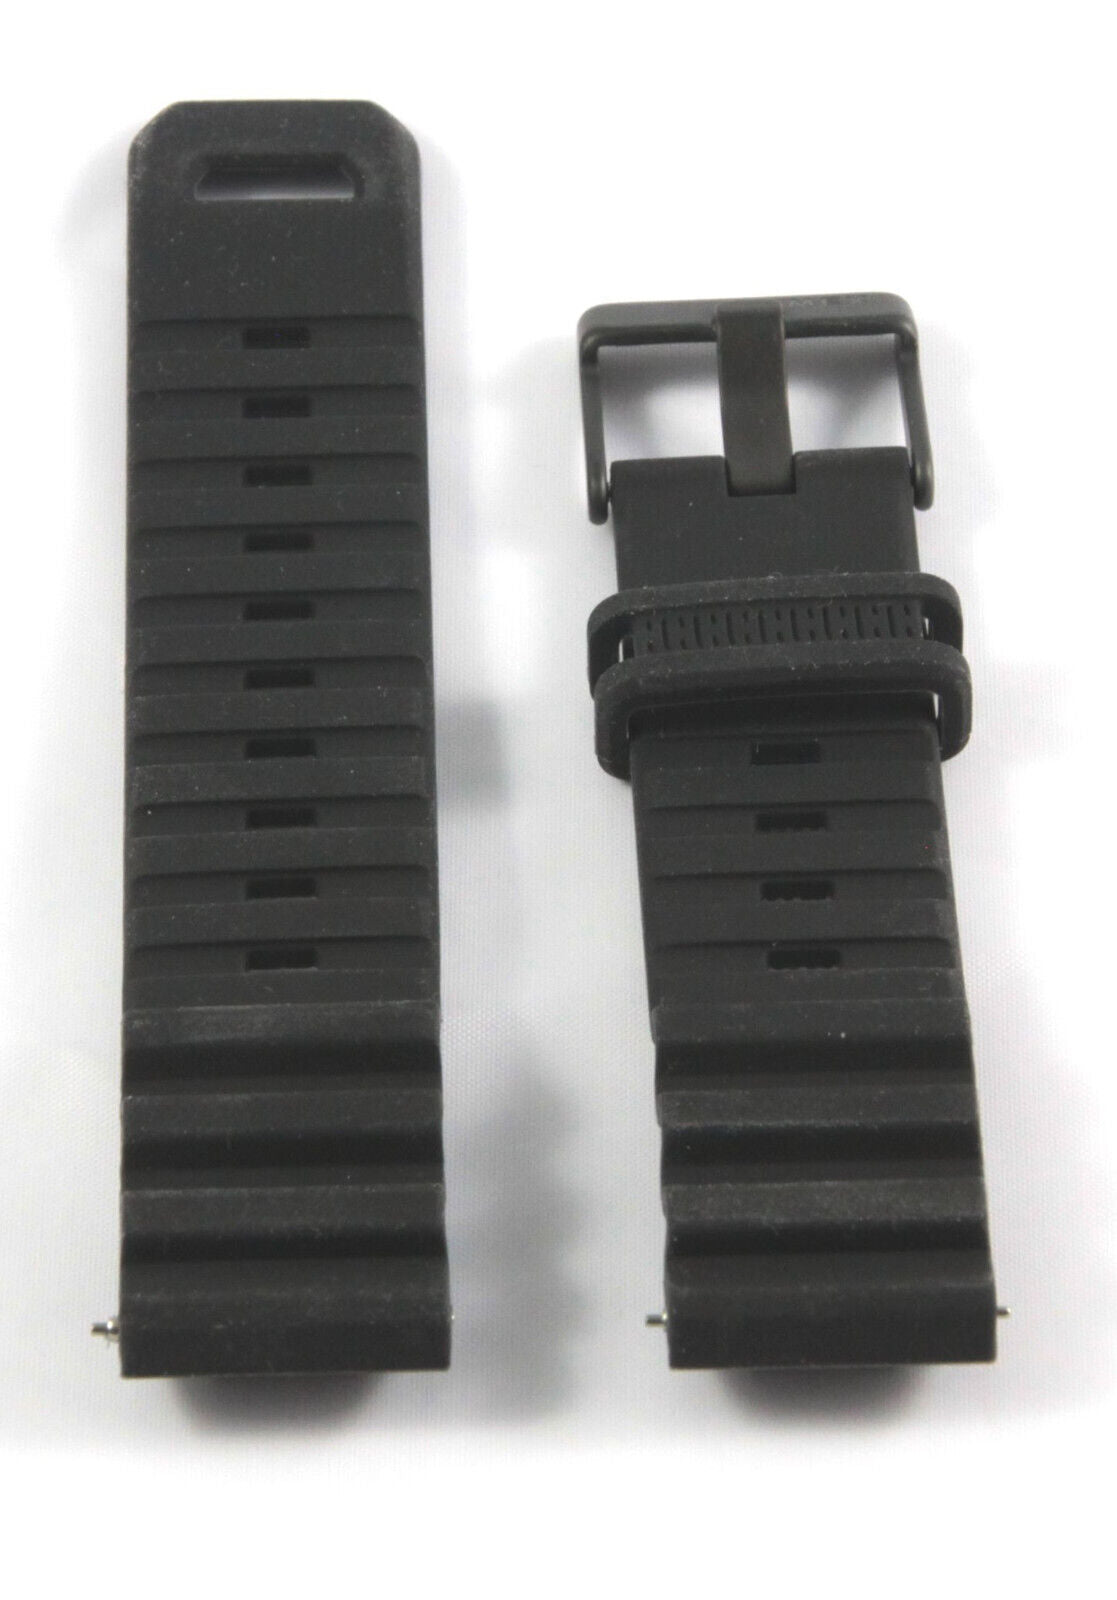 Timex Ersatzarmband für TW5M26100 Command - passt auch TW5M26400 & TW5M26500